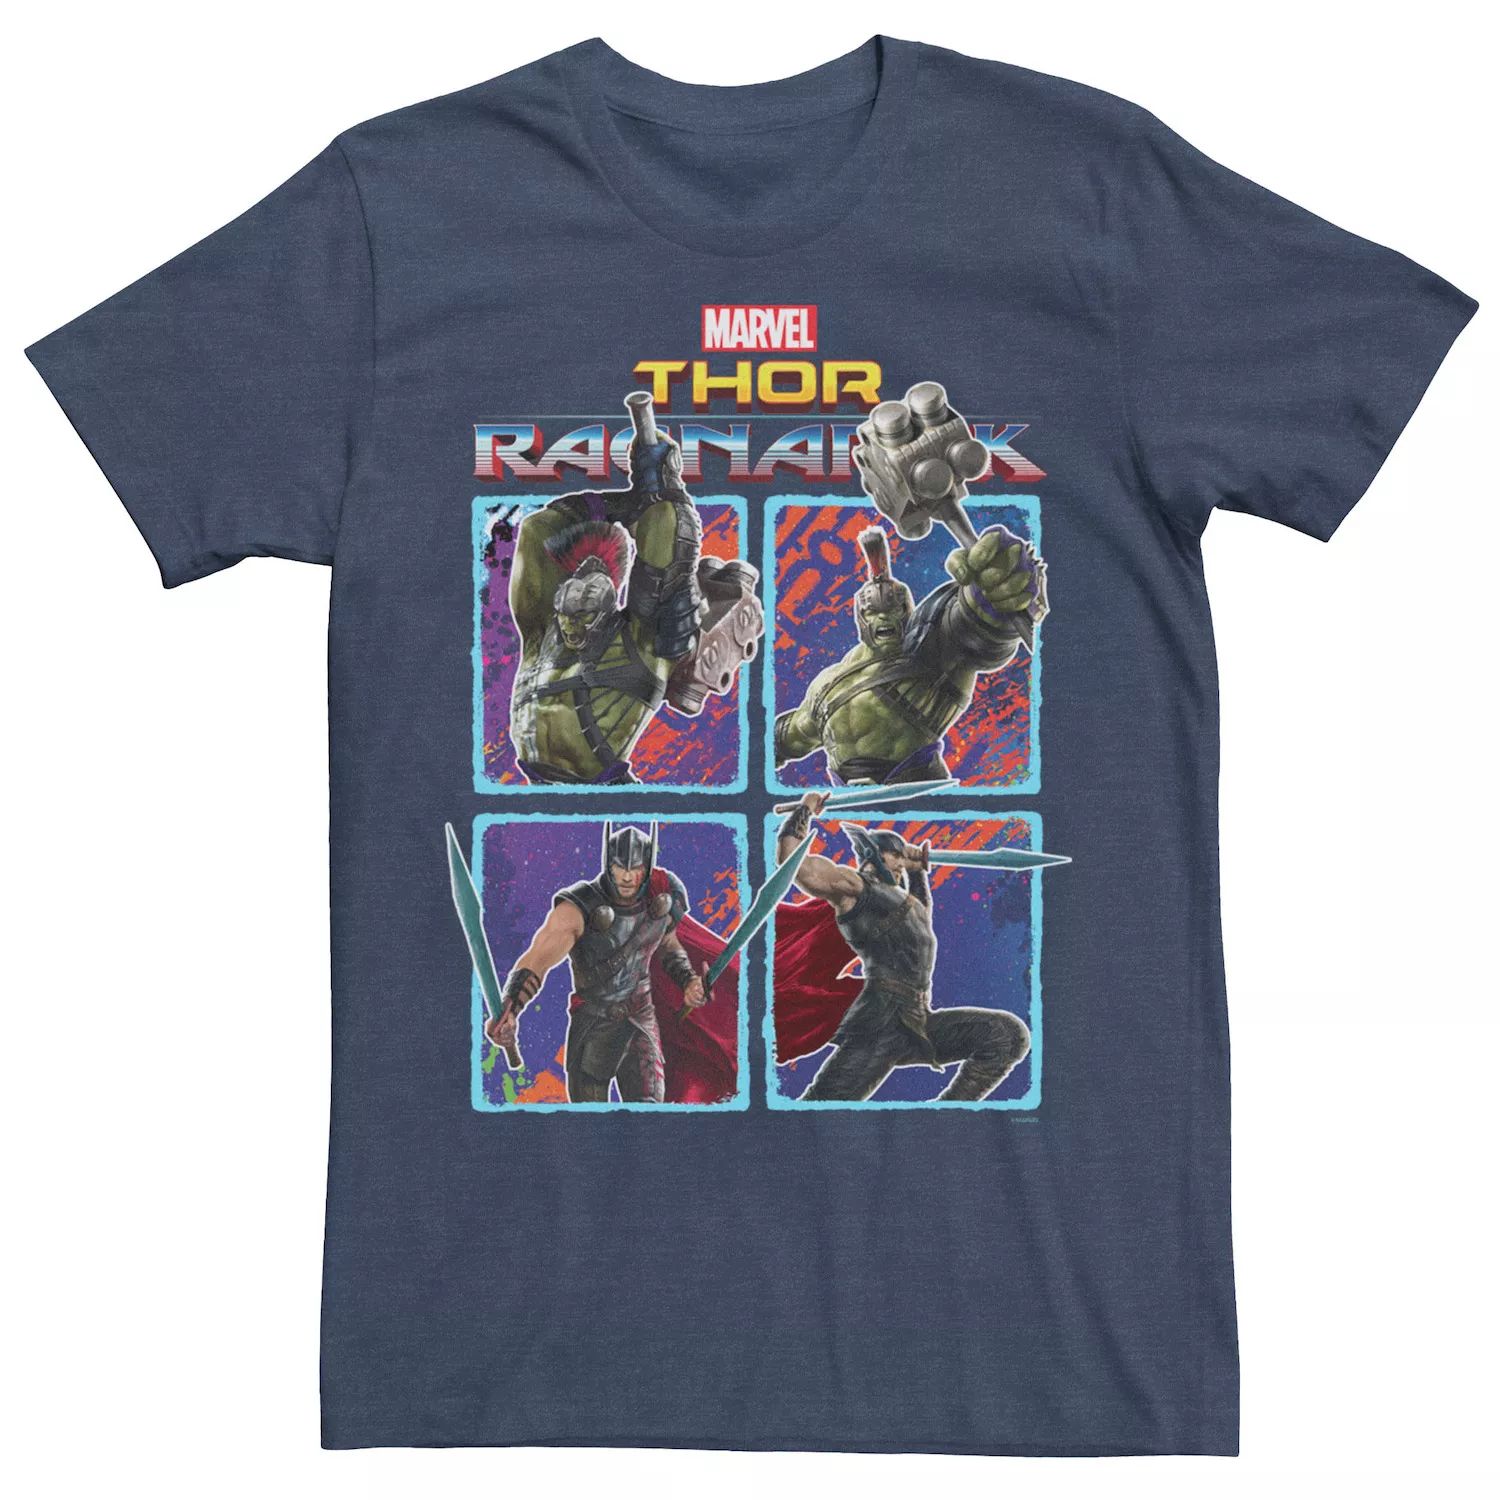 Мужская футболка Marvel Thor Ragnarok Hulk Thor Action Pose Grid Licensed Character